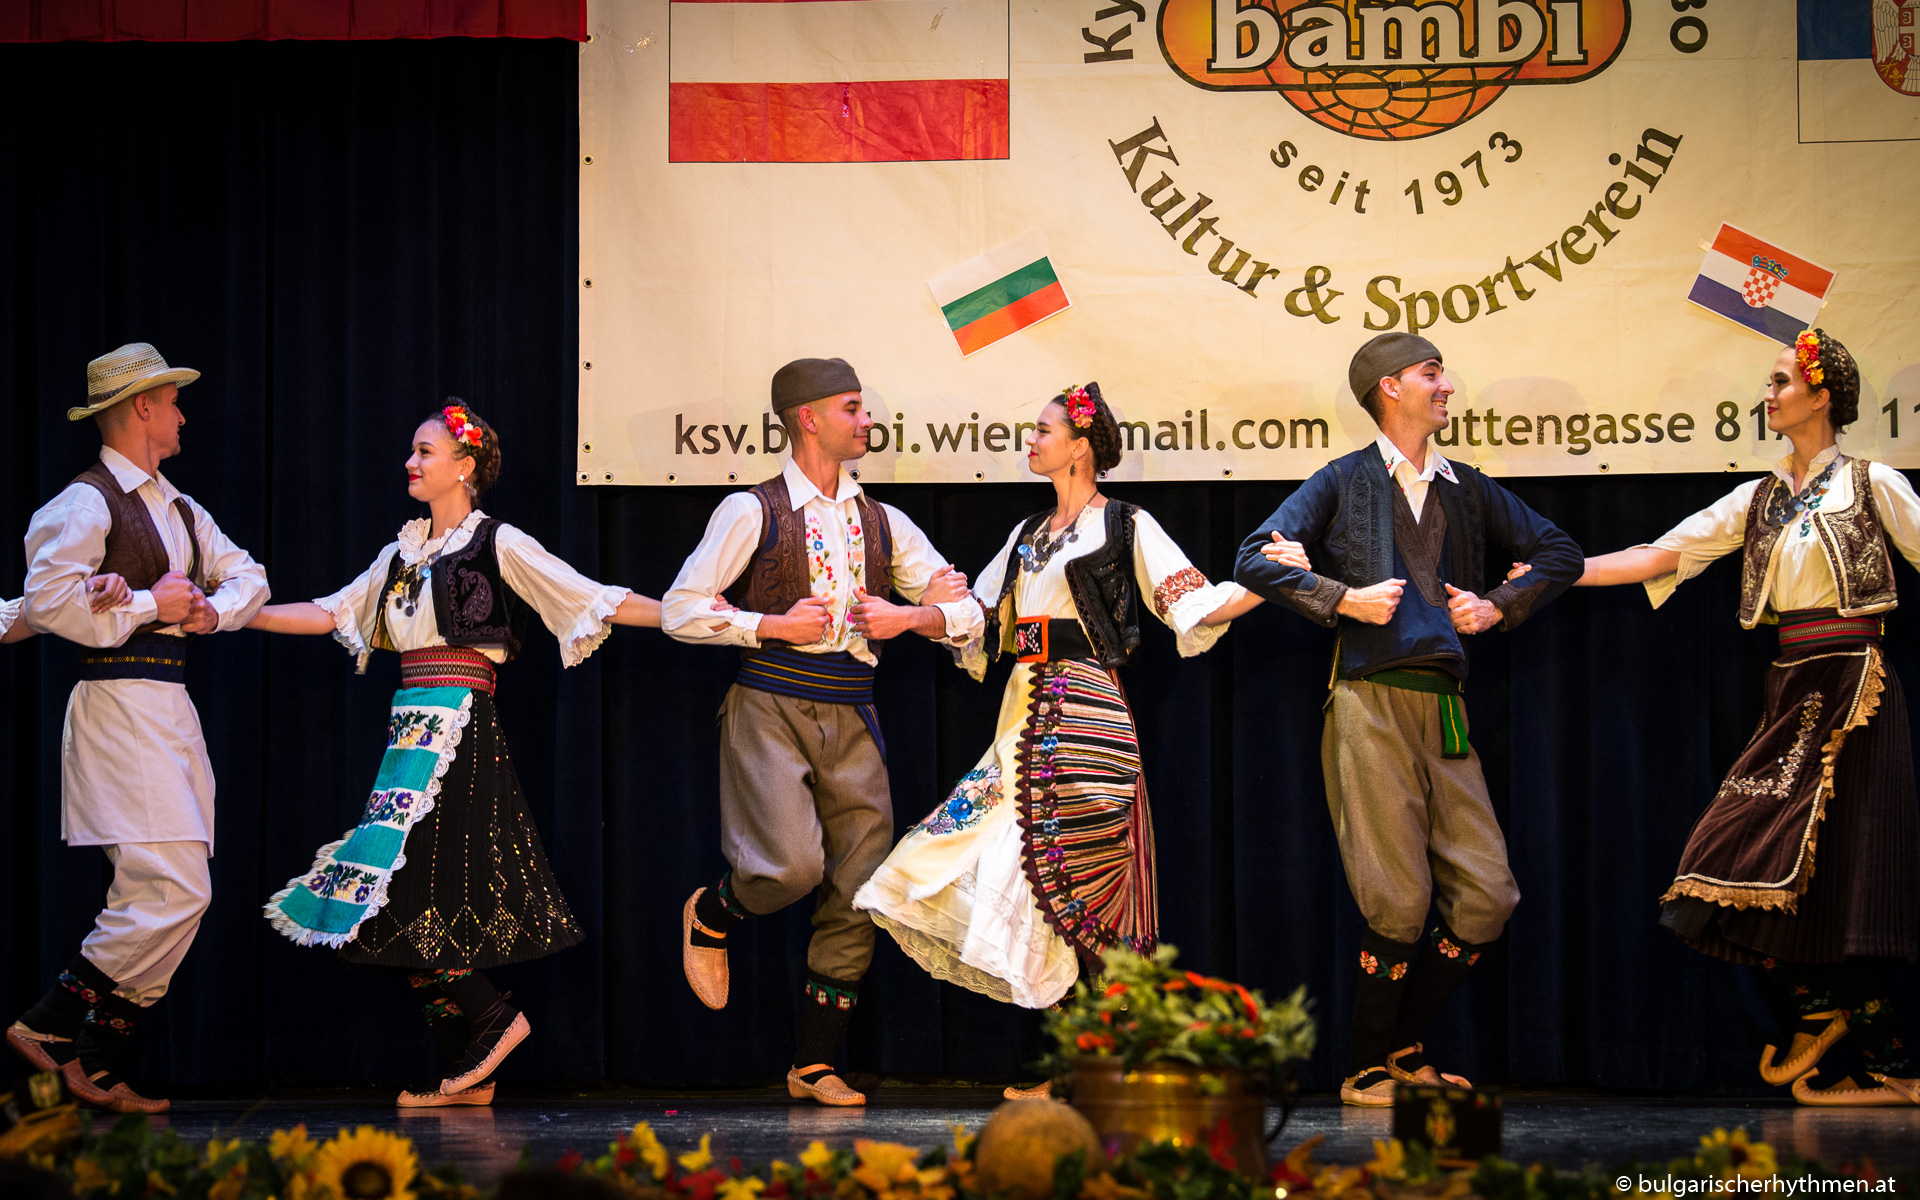 New Business: Wir tanzen Folklore und kommunizieren für den Österreichischen Verband der serbischen Folklorevereine und den serbischen Kultur- und Sportverein Bambi